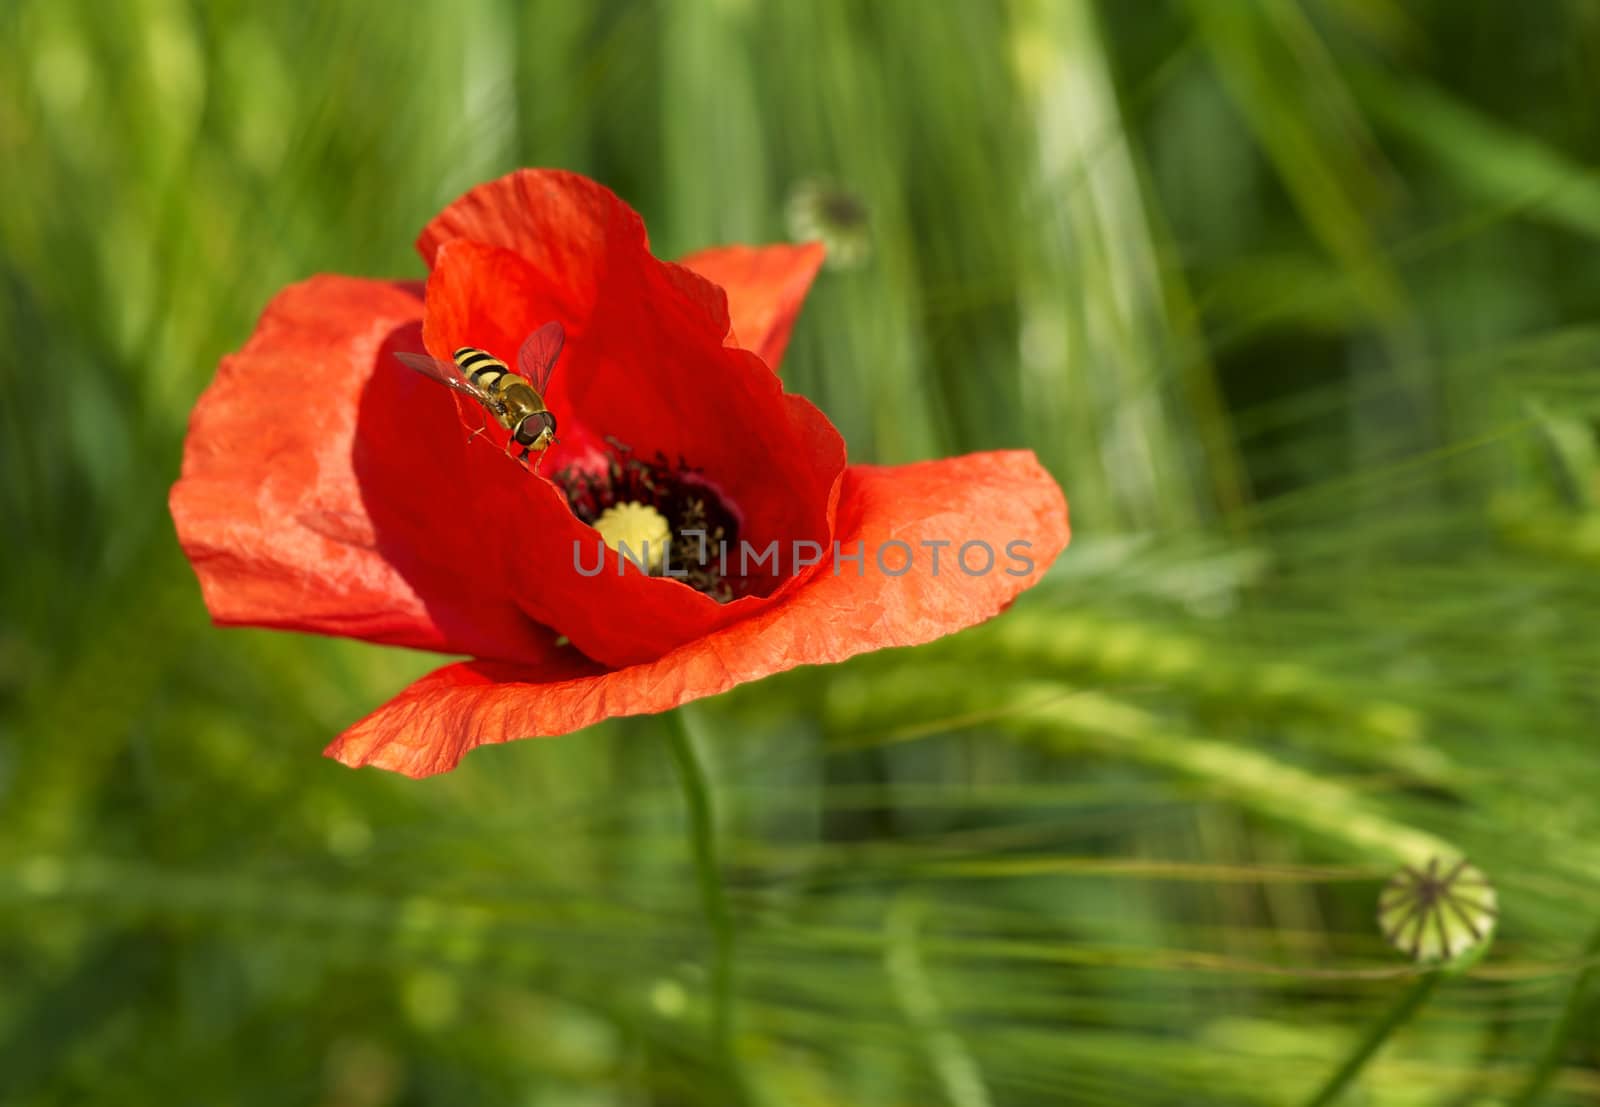 Wasp on poppy by Kamensky